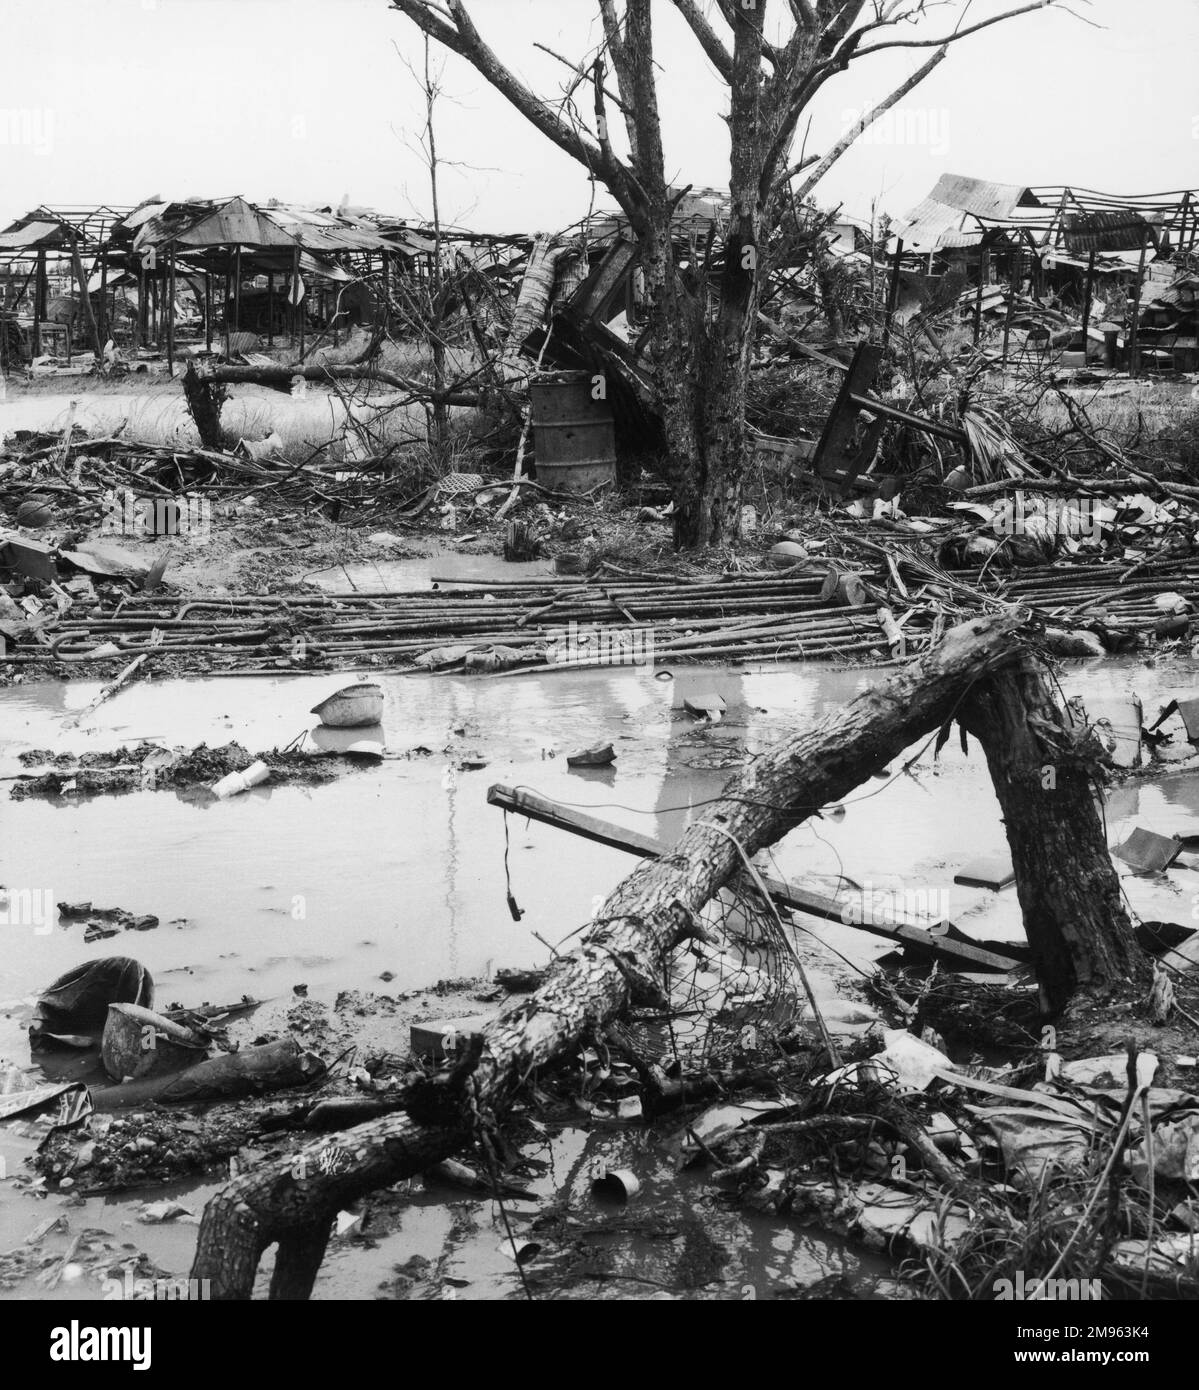 Südvietnam, Quang Tri: Die Zerstörung des Krieges ist nur allzu offensichtlich: Im schlammigen Wasser versenkte Helme, umgefallene Bäume und ausgebrannte Stände und Schutzräume Stockfoto